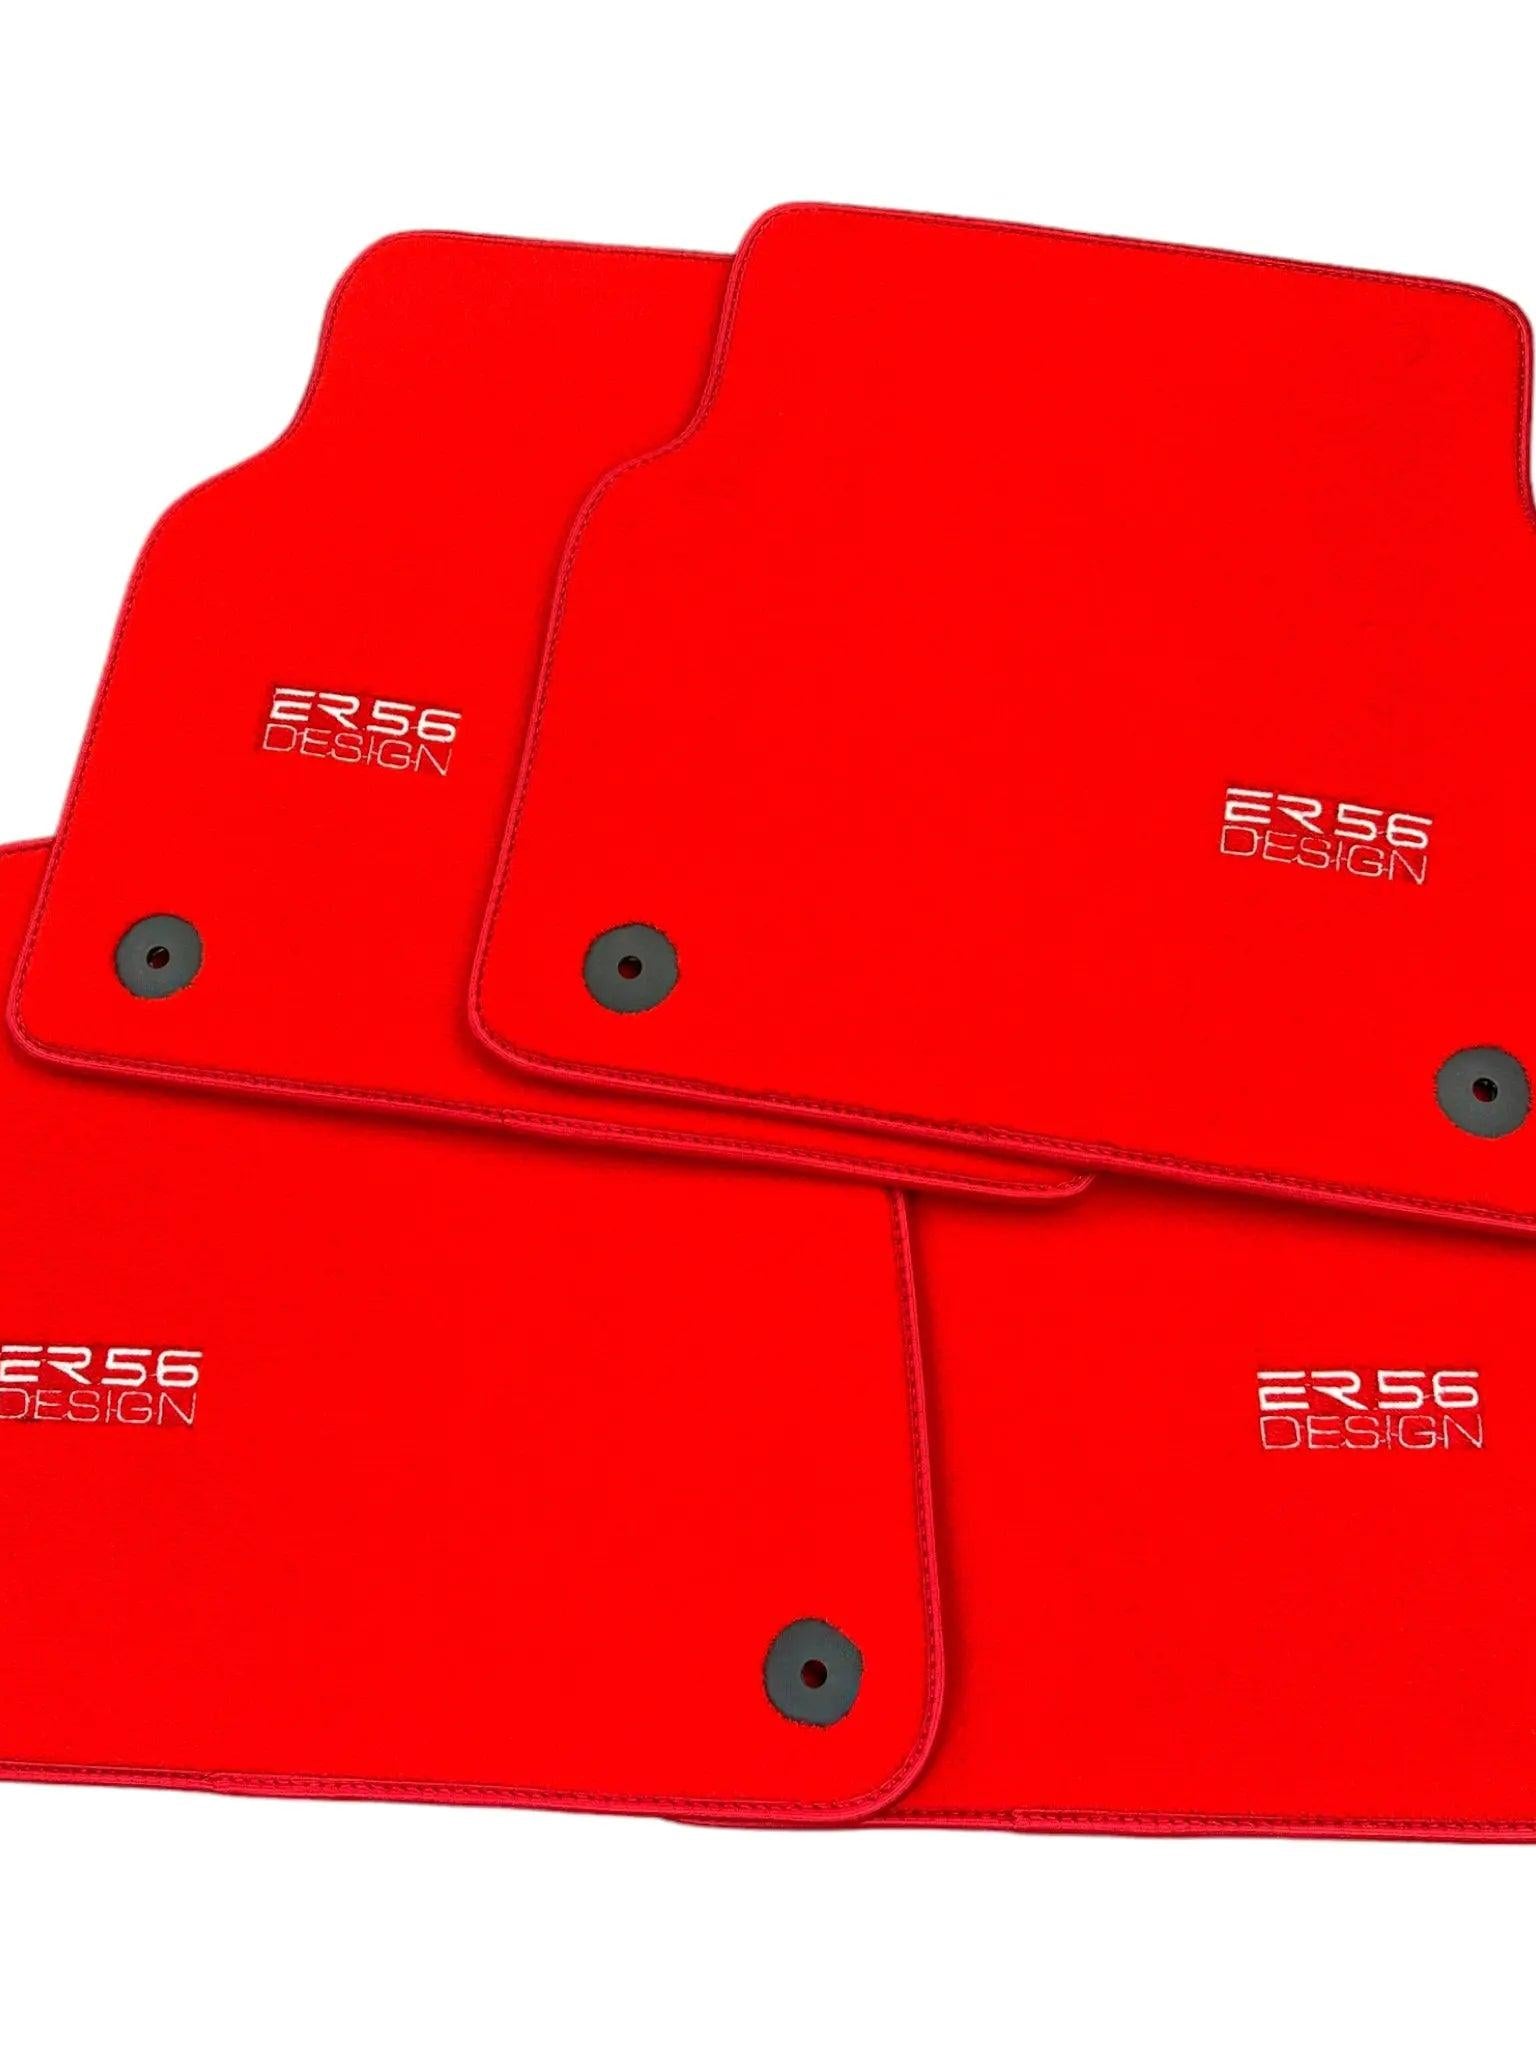 Red Floor Mats for Audi A6 - C8 Allroad Quattro (2019-2023) | ER56 Design